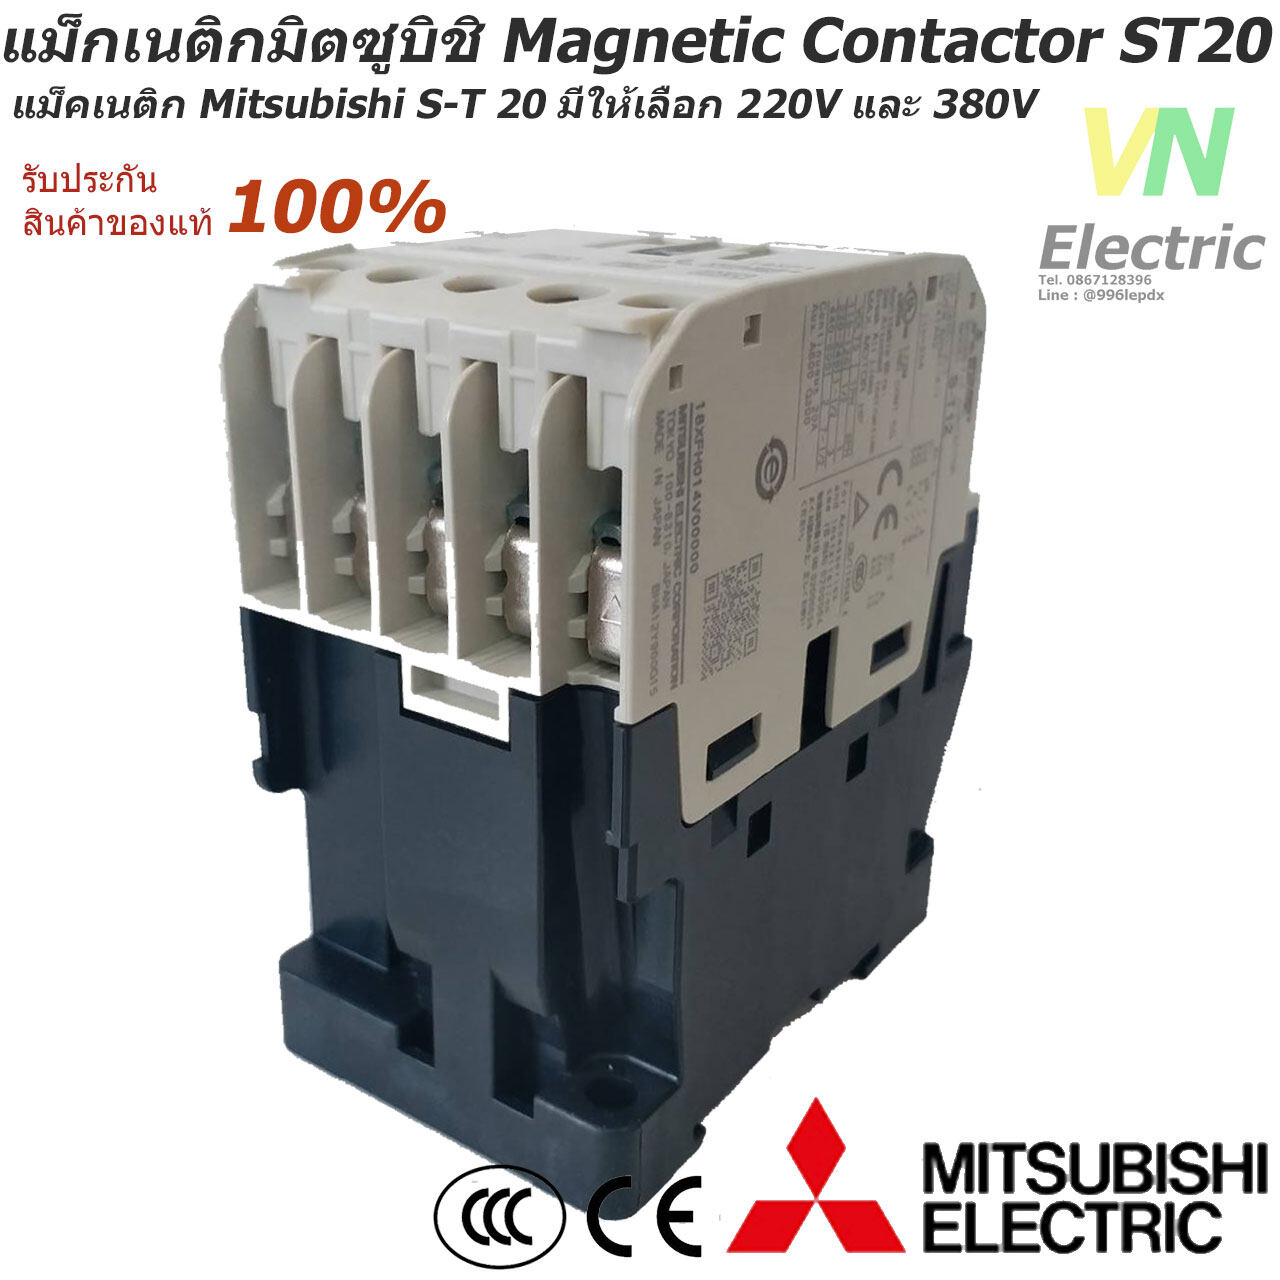 แม็กเนติกมิตซูบิชิ MITSUBISHI Magnetic Contactor S-T 20 220V-380V แม็คเนติก สี 220 V. สี 220 V.